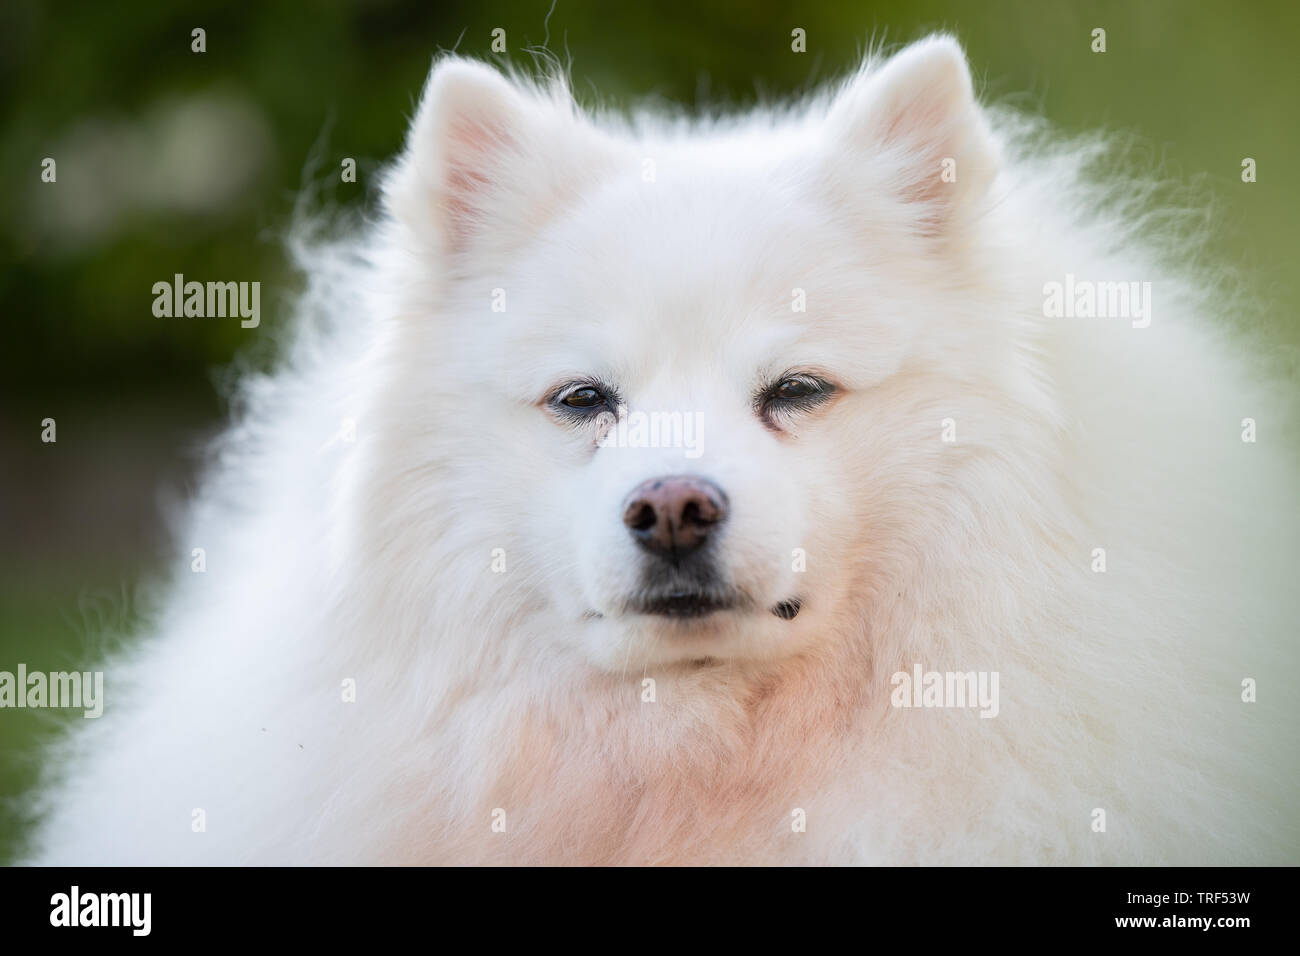 Le portrait d'un chien esquimau américain. Ces chiens sont un membre de la famille Spitz, originaires de l'Allemagne. Banque D'Images